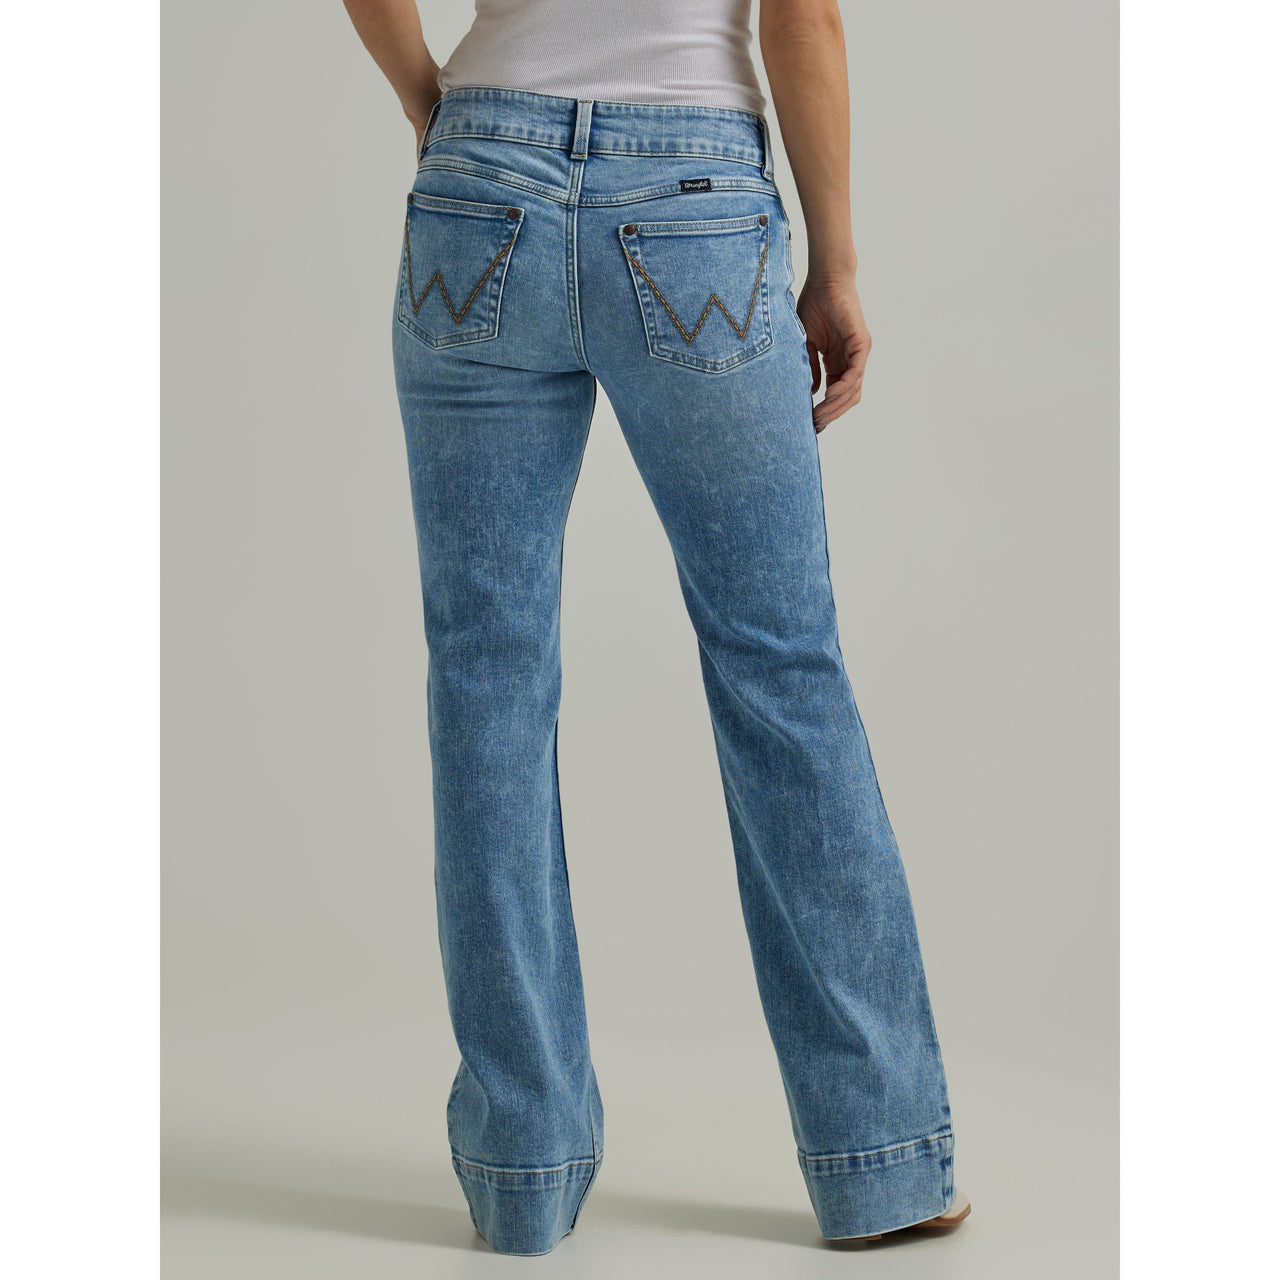 Wrangler Women's Retro Mae Mid Rise Trouser Jeans - Kacey